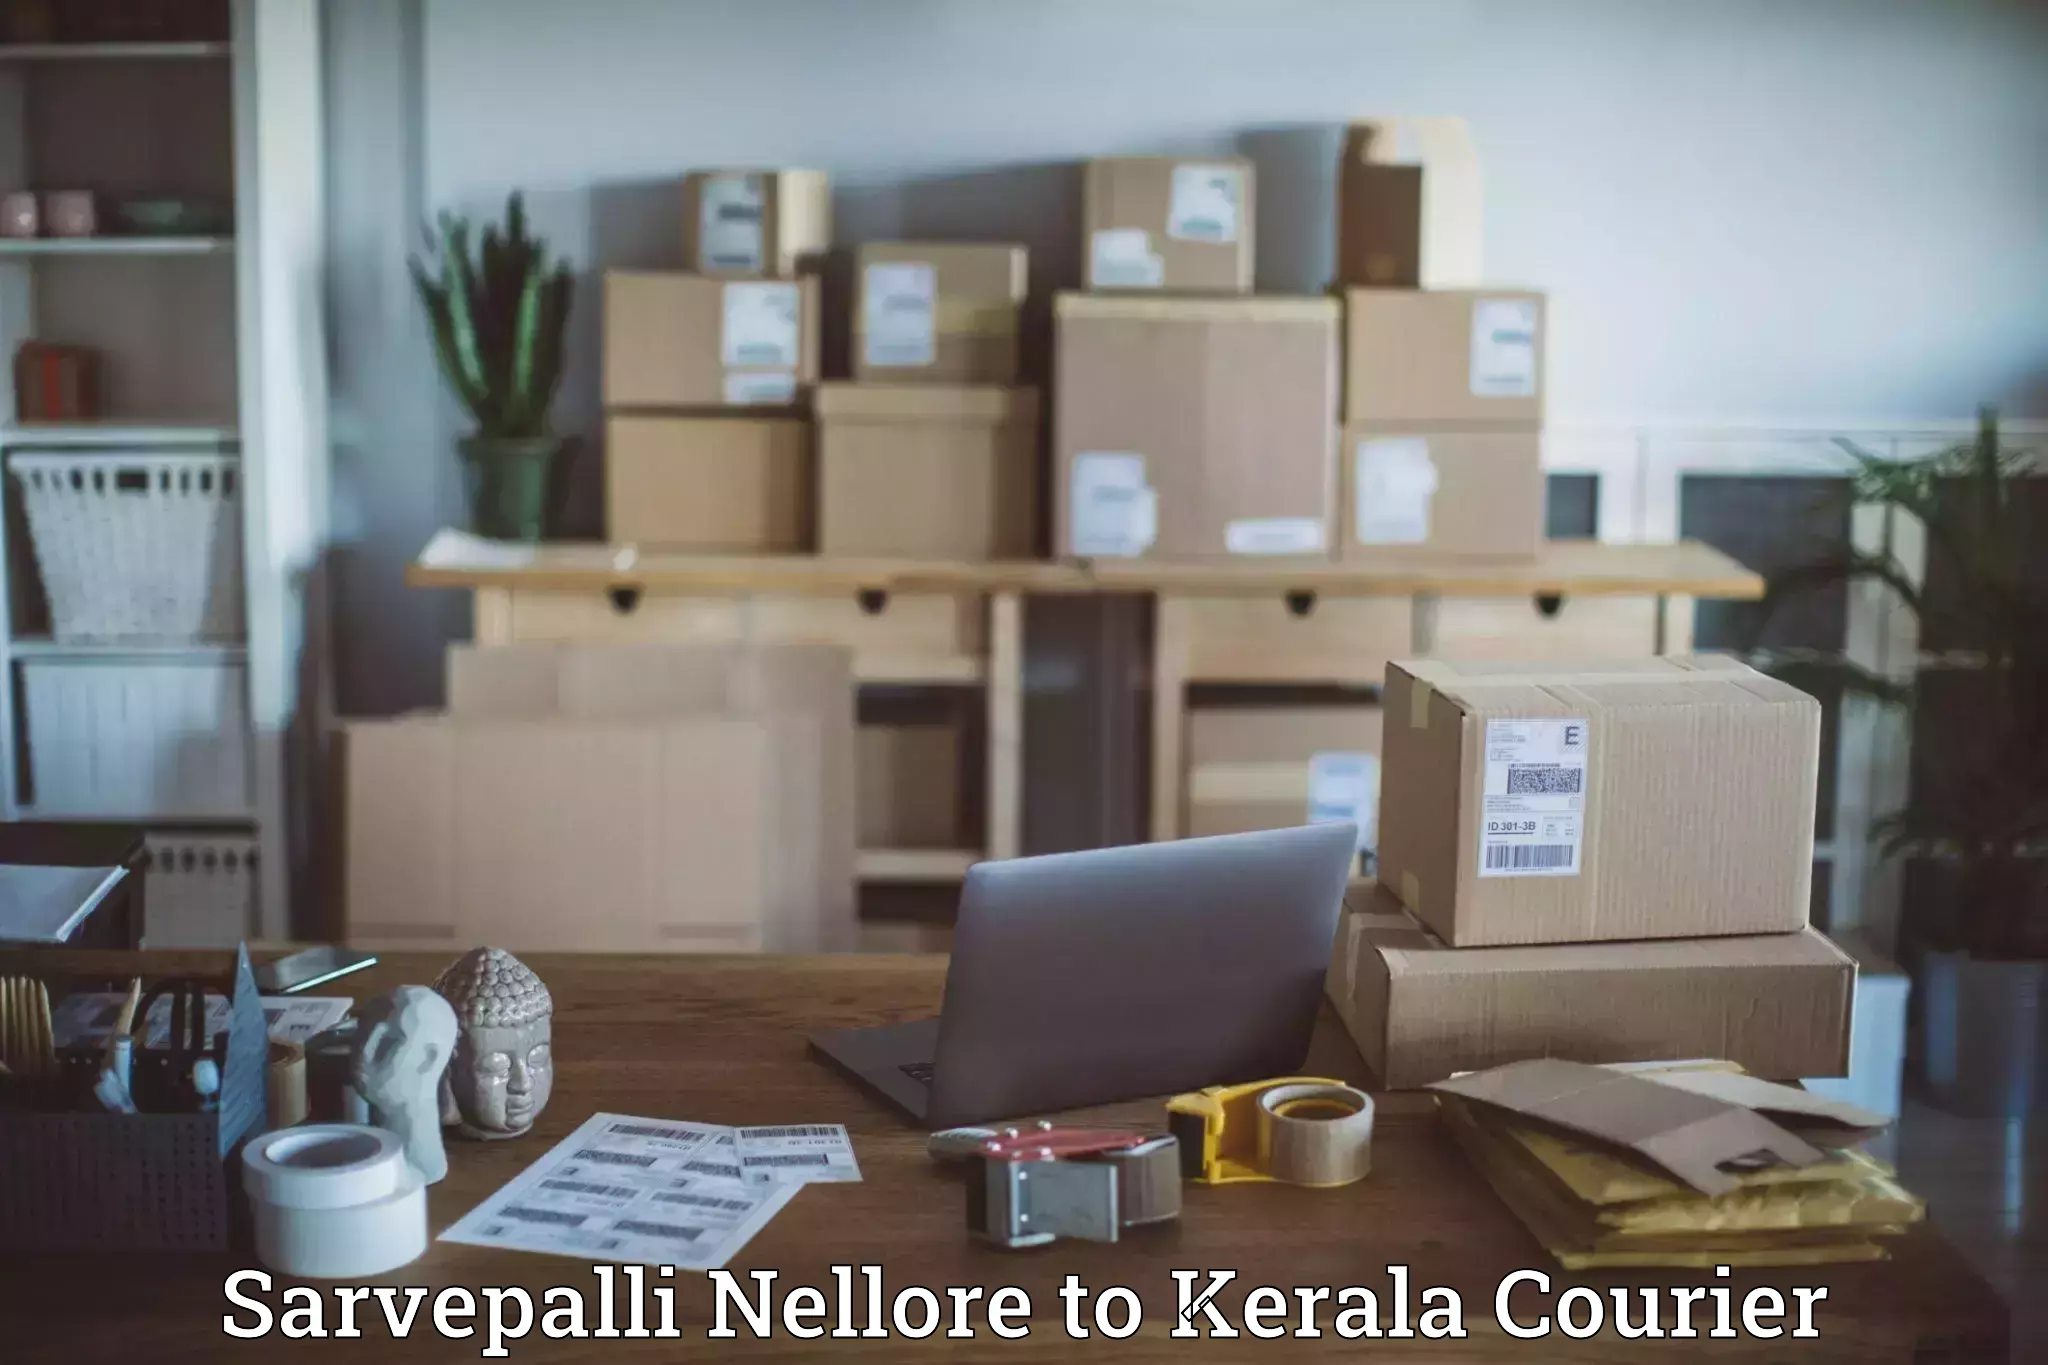 24-hour courier service Sarvepalli Nellore to Taliparamba